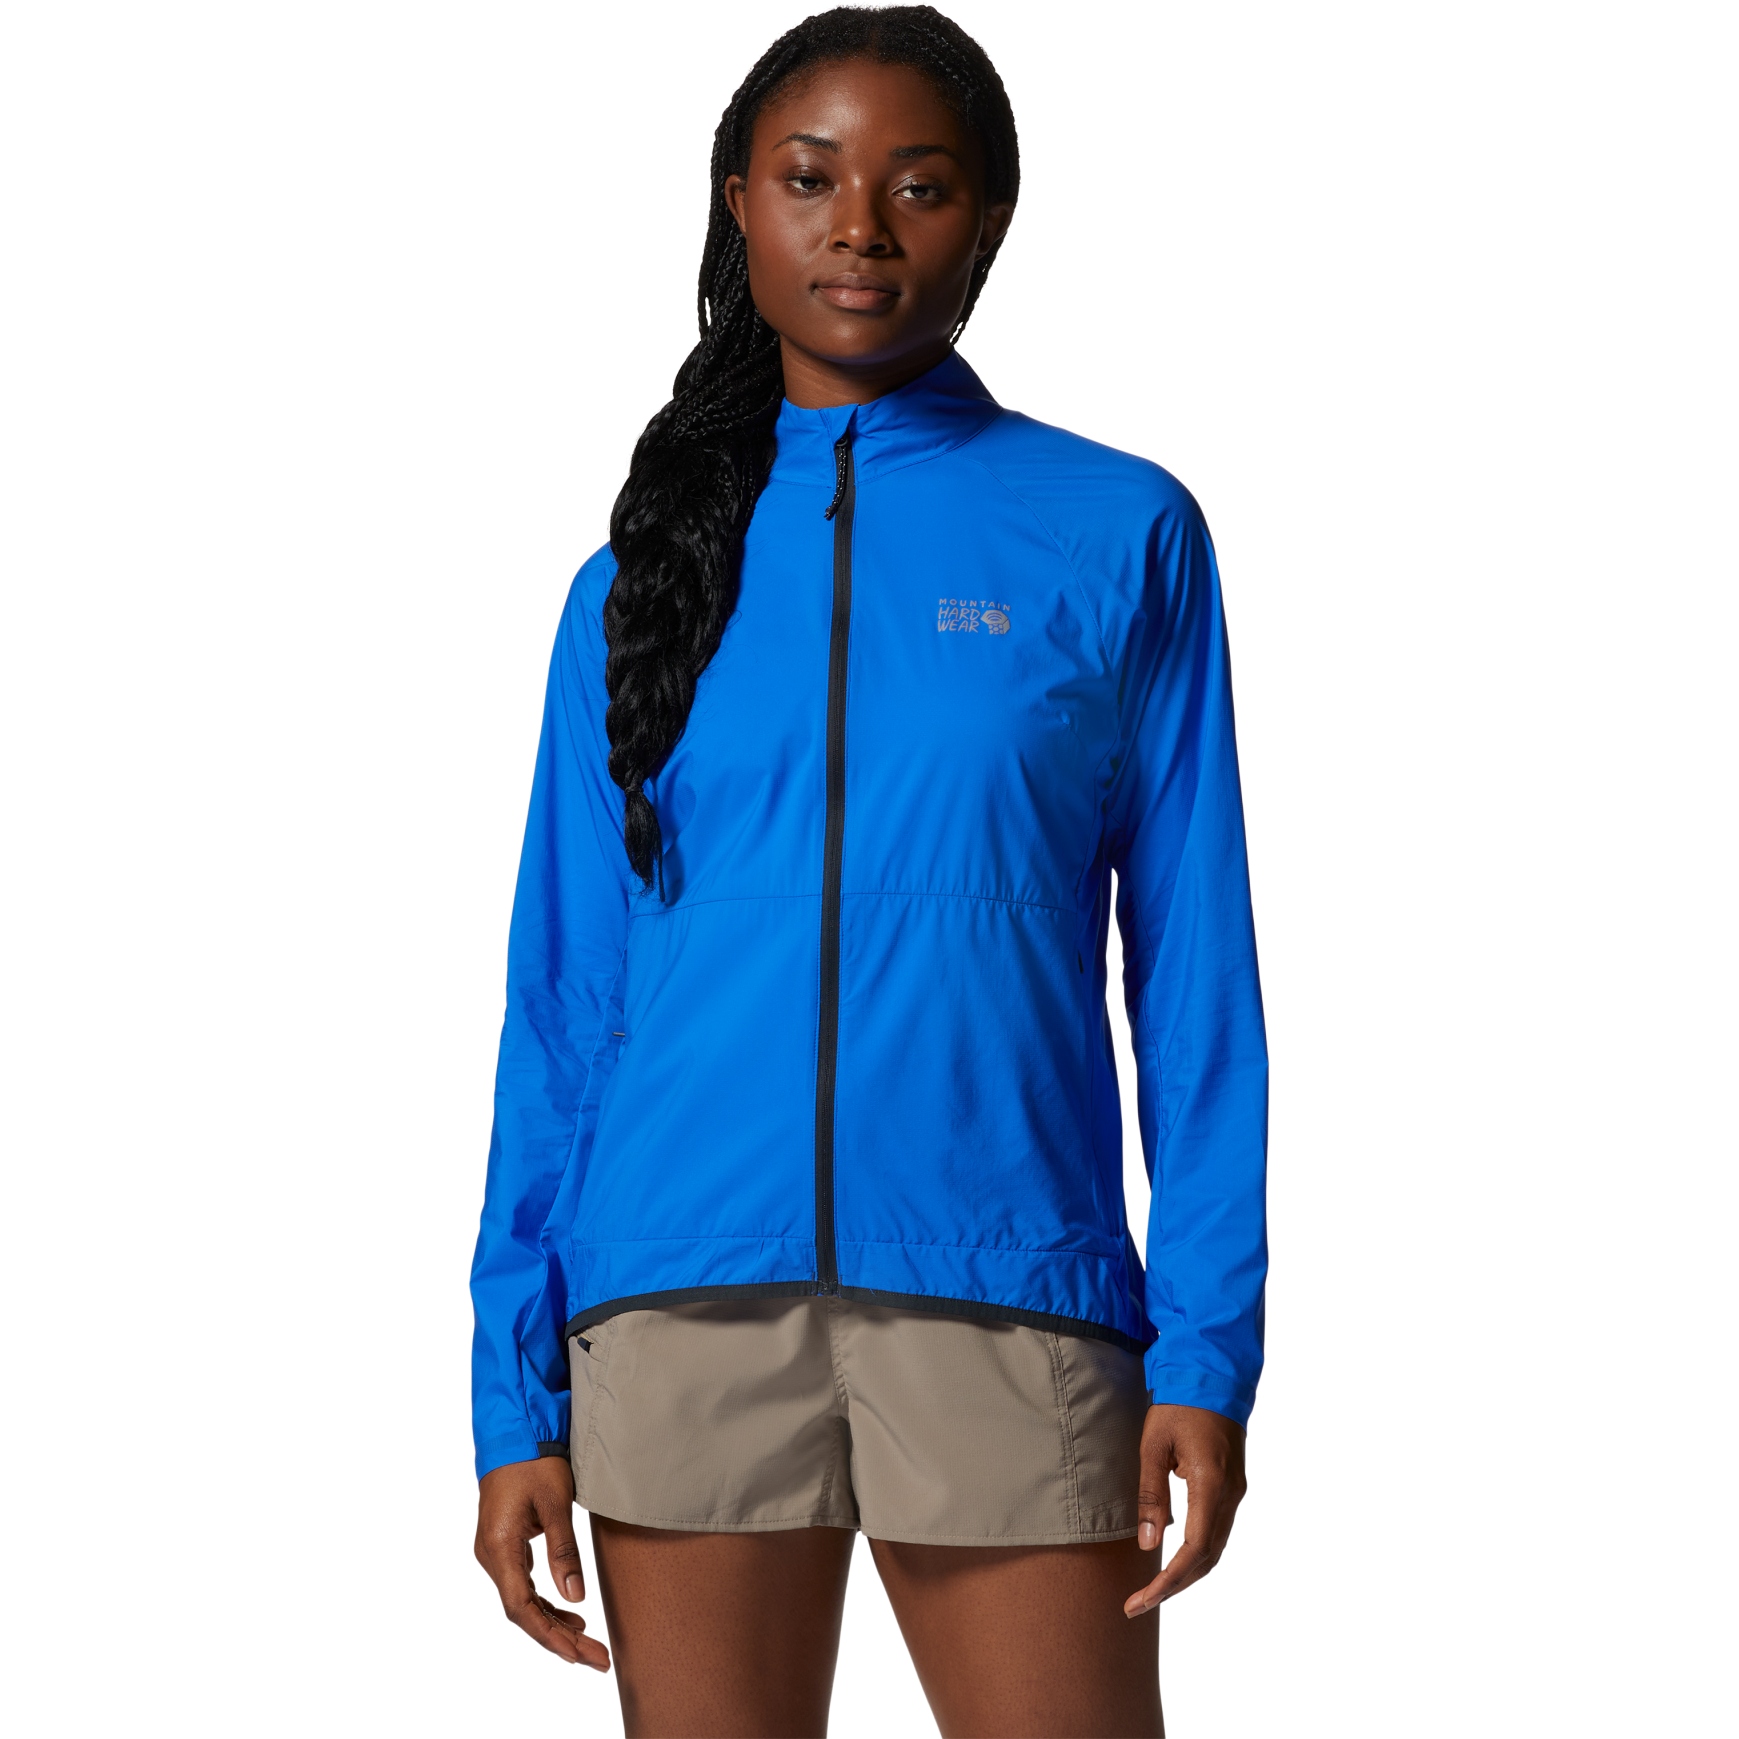 Produktbild von Mountain Hardwear Kor AirShell Full Zip Jacke Damen - bright island blue